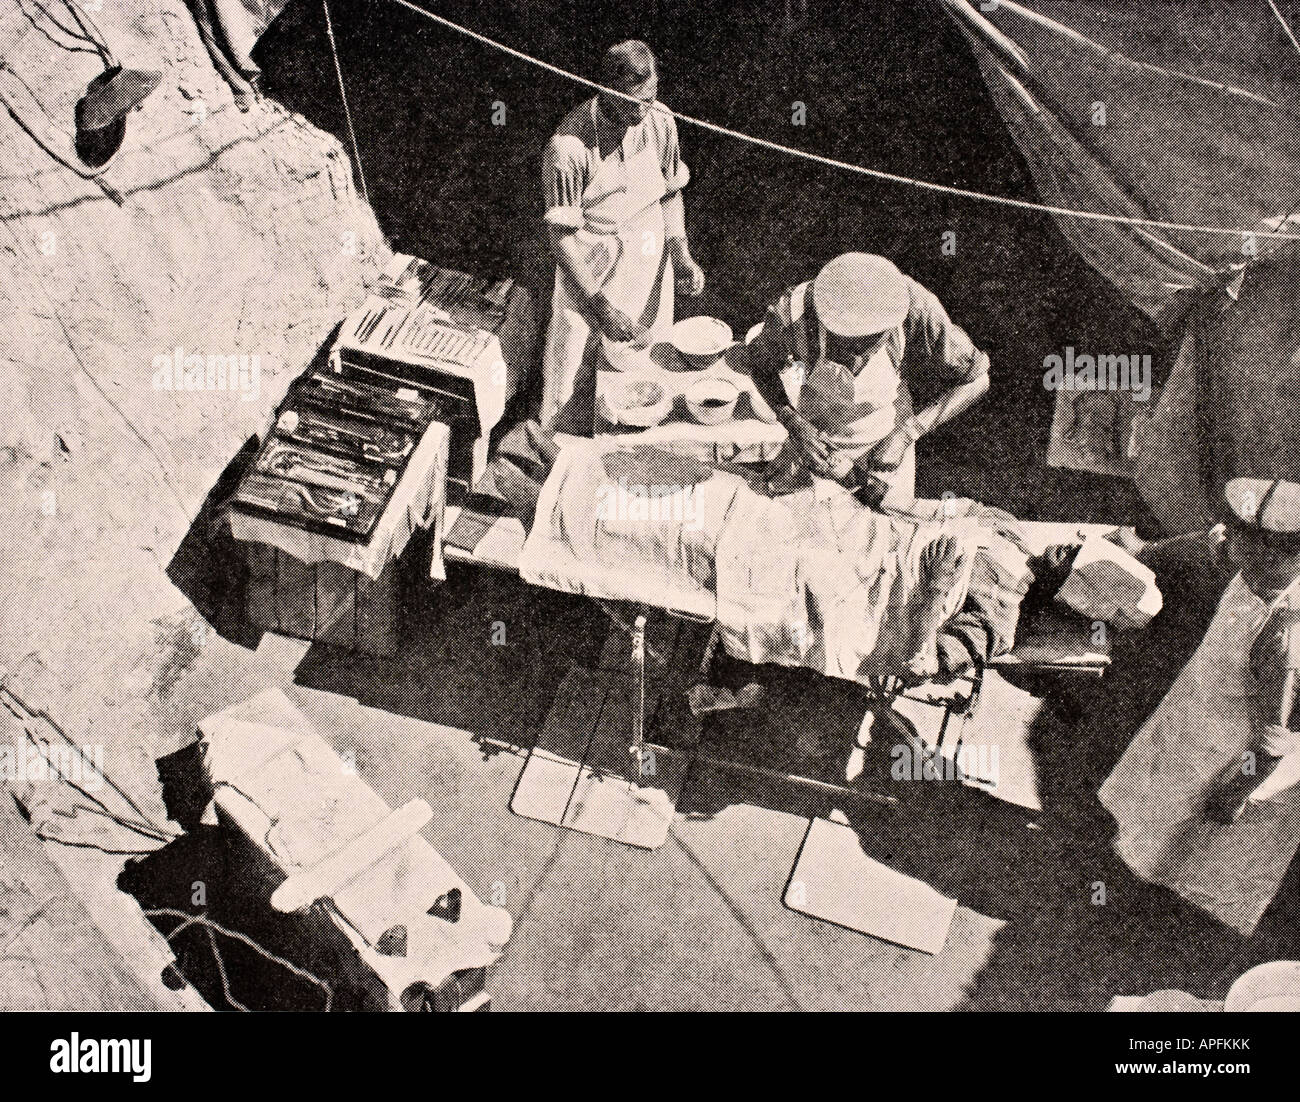 Feldchirurgie auf der Halbinsel Gallipoli, Türkei 1915 während des Ersten Weltkriegs. Der Chirurg entfernt eine Kugel aus dem Arm eines Soldaten. Stockfoto